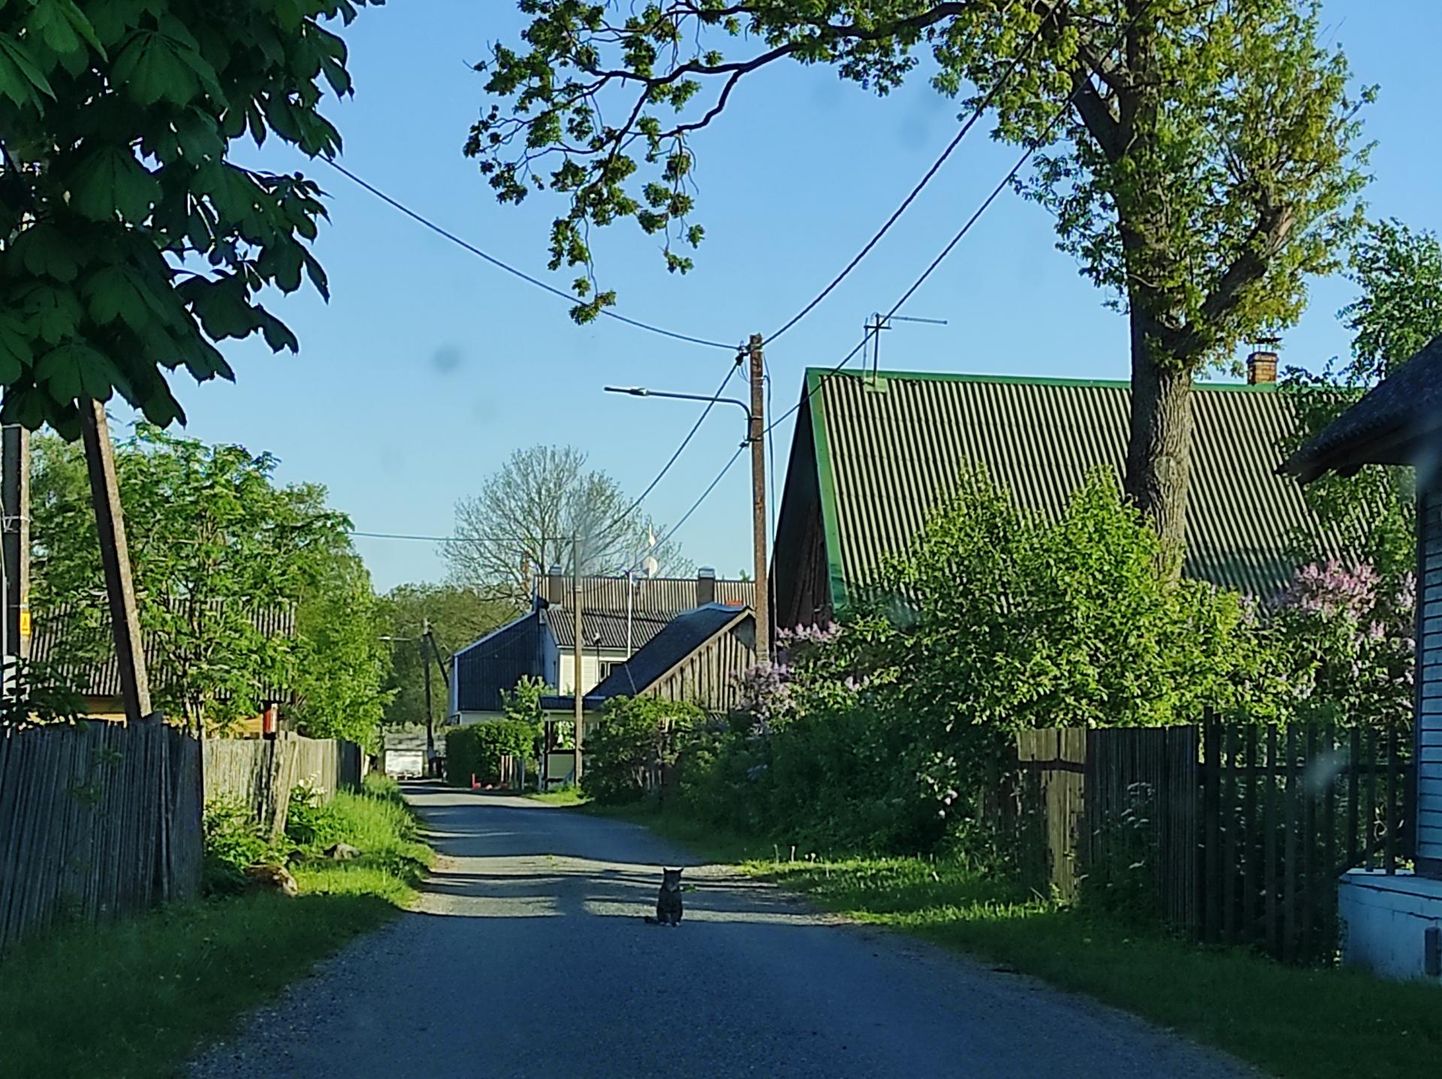 Nautige tänavamiljööd – katkematut majaderida suurte väravate ja pikkade Peipsini ulatuvate kruntidega. Külad kuuluvad Eesti kauneimate hulka.